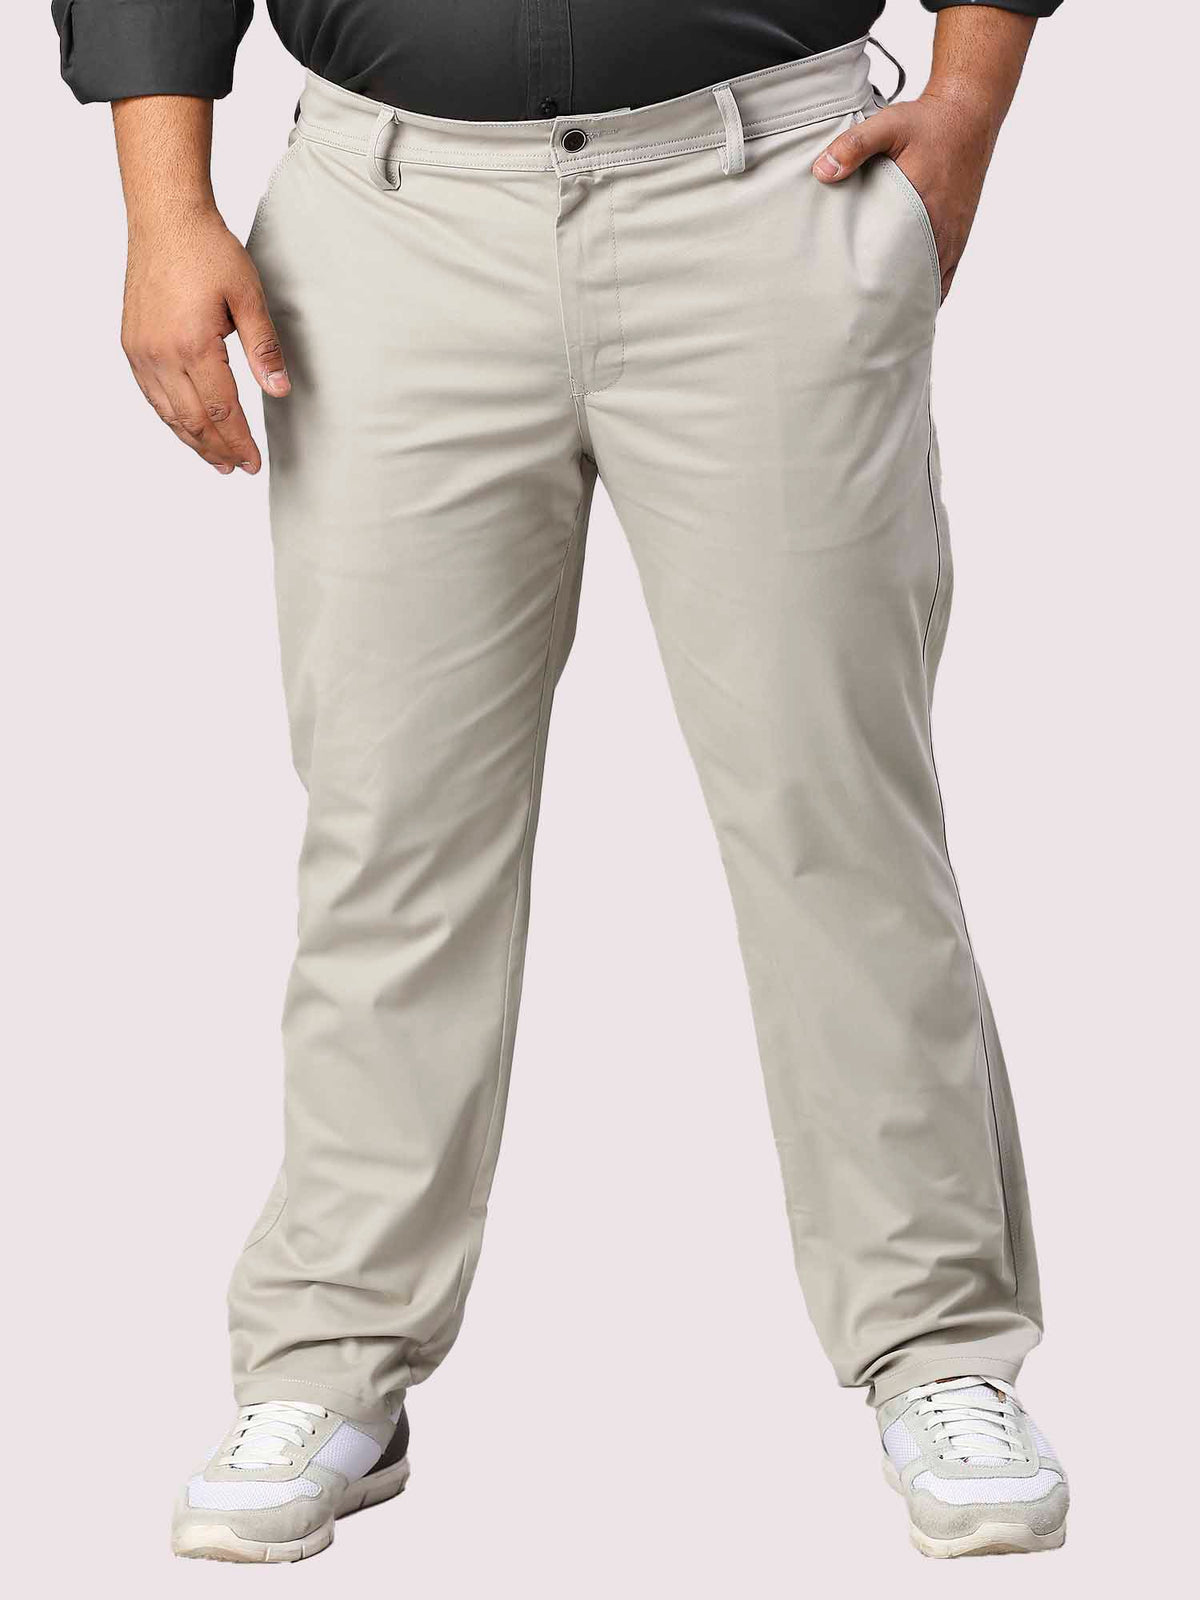 Cream Solid Cotton Trouser Men's Plus Size